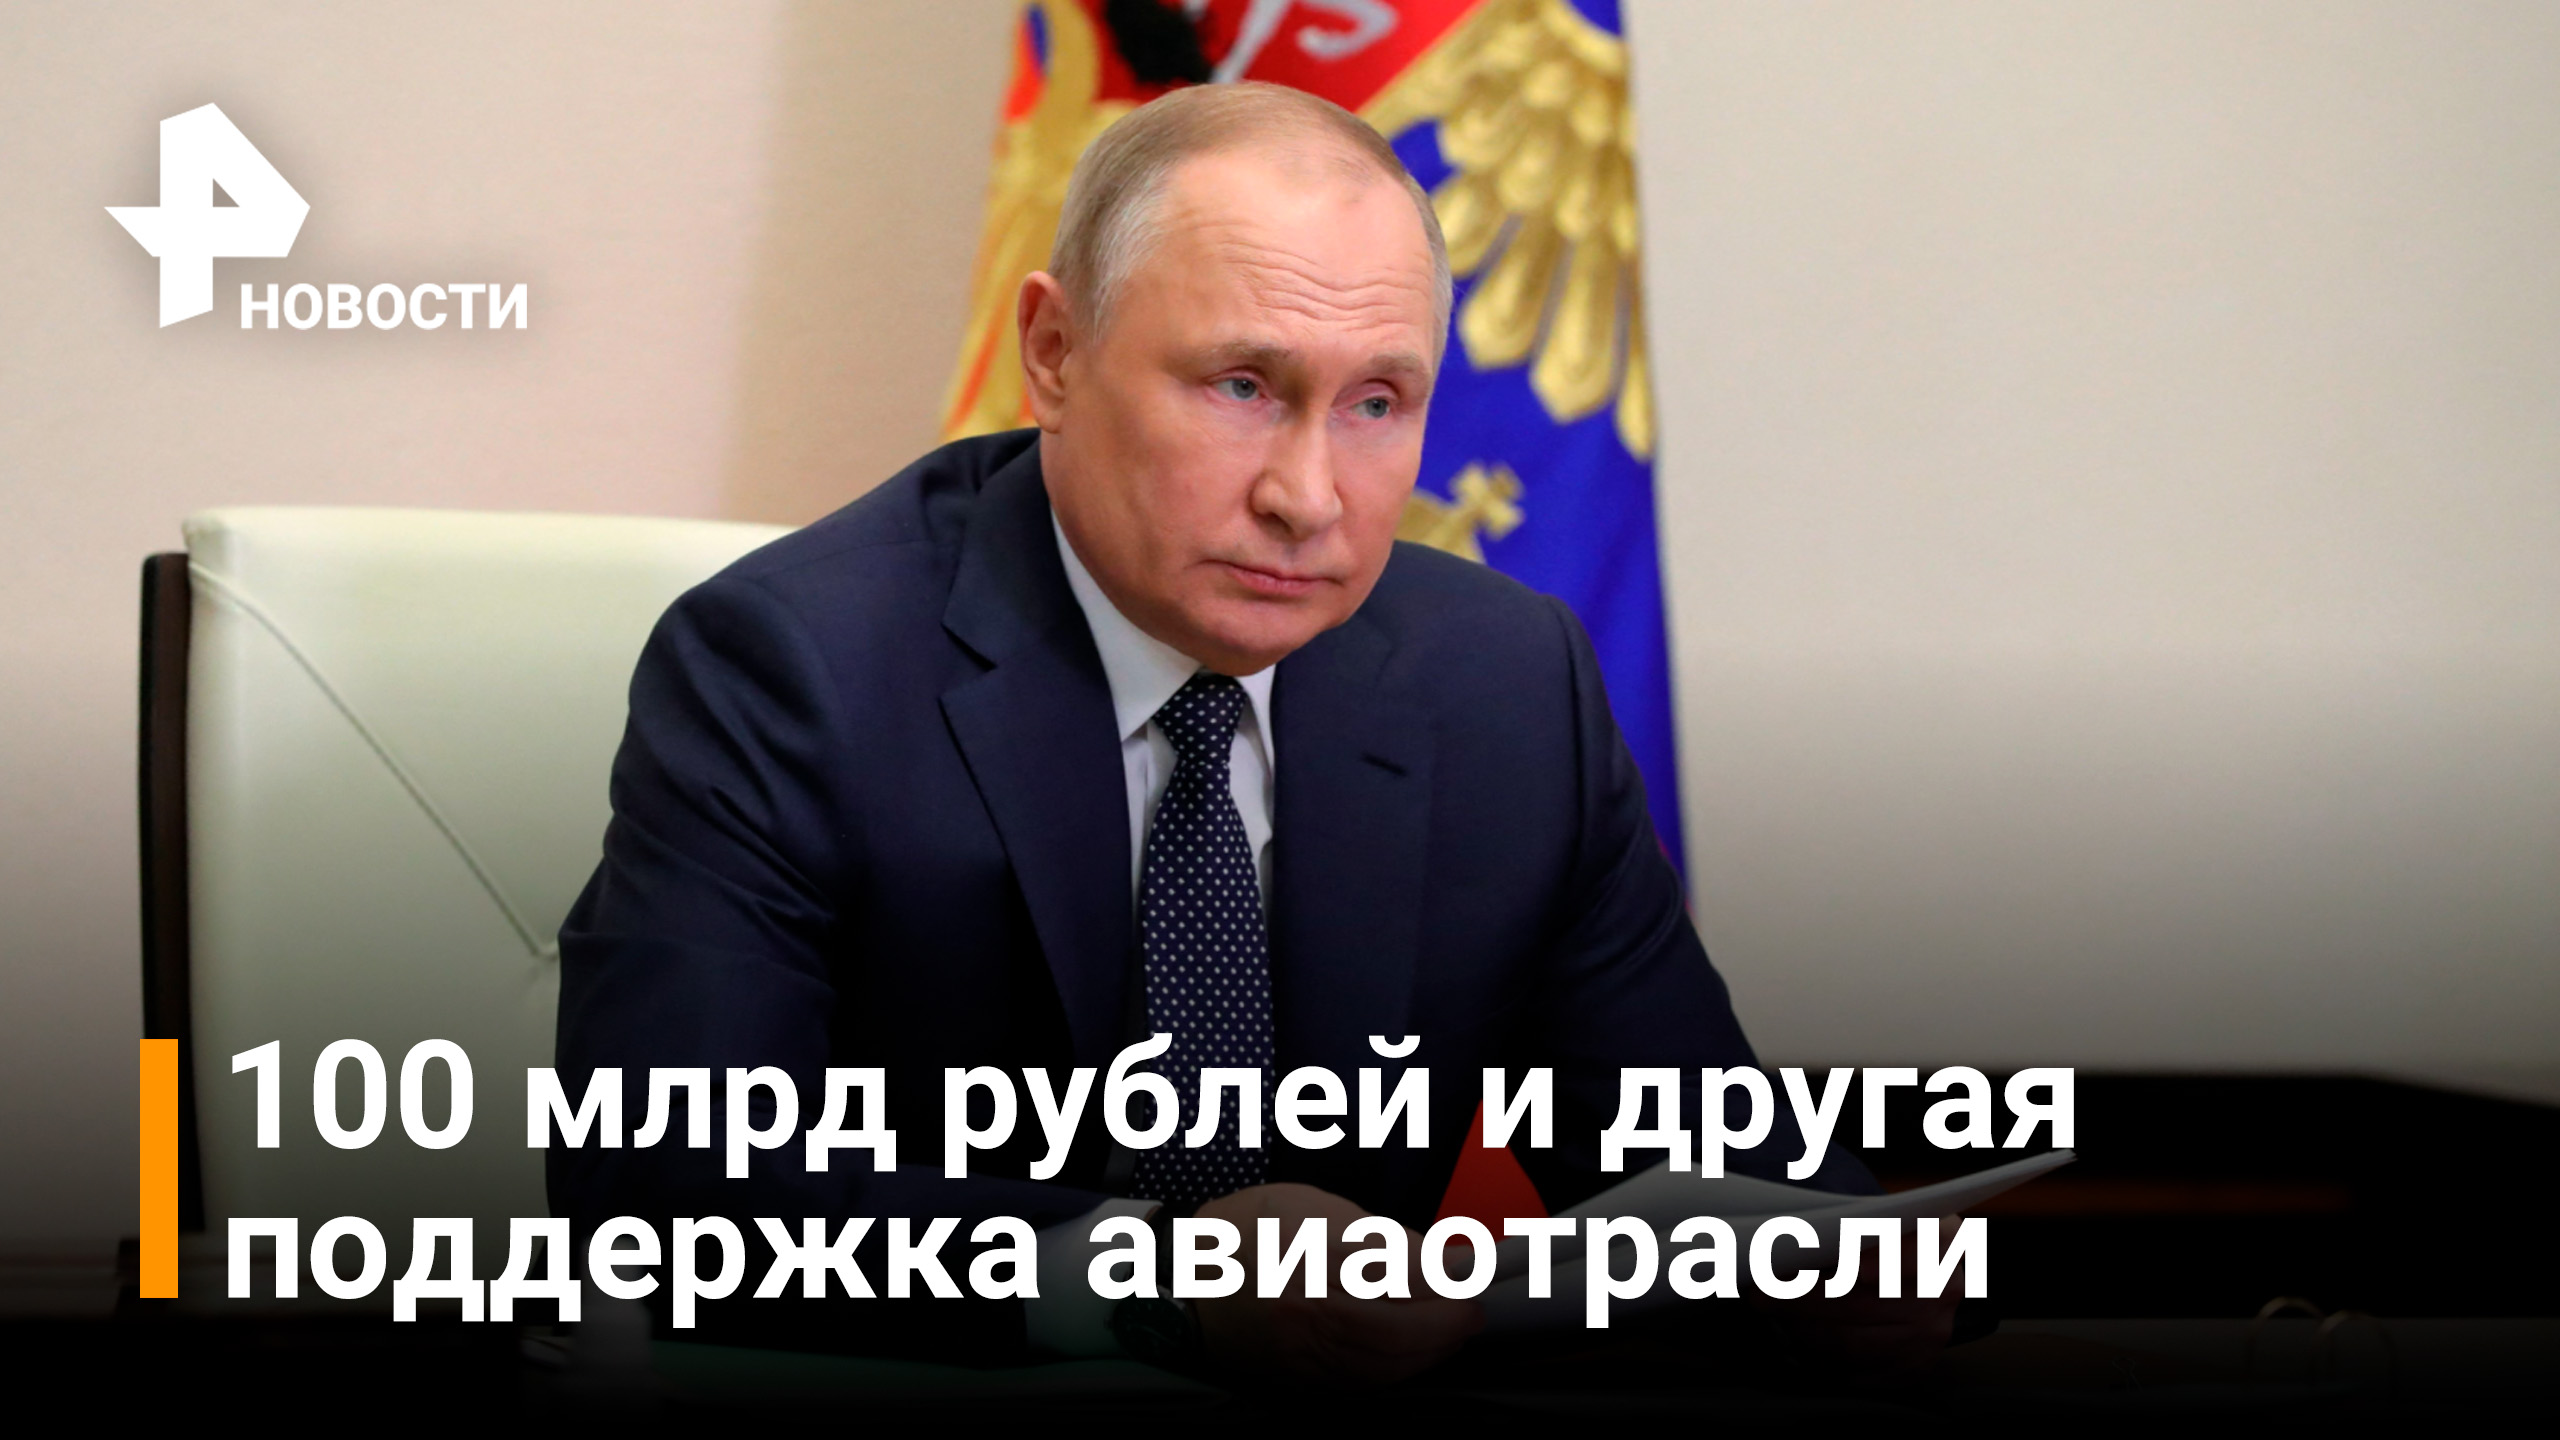 Путин предложил субсидировать авиакомпании на 100 млрд рублей / Новости РЕН